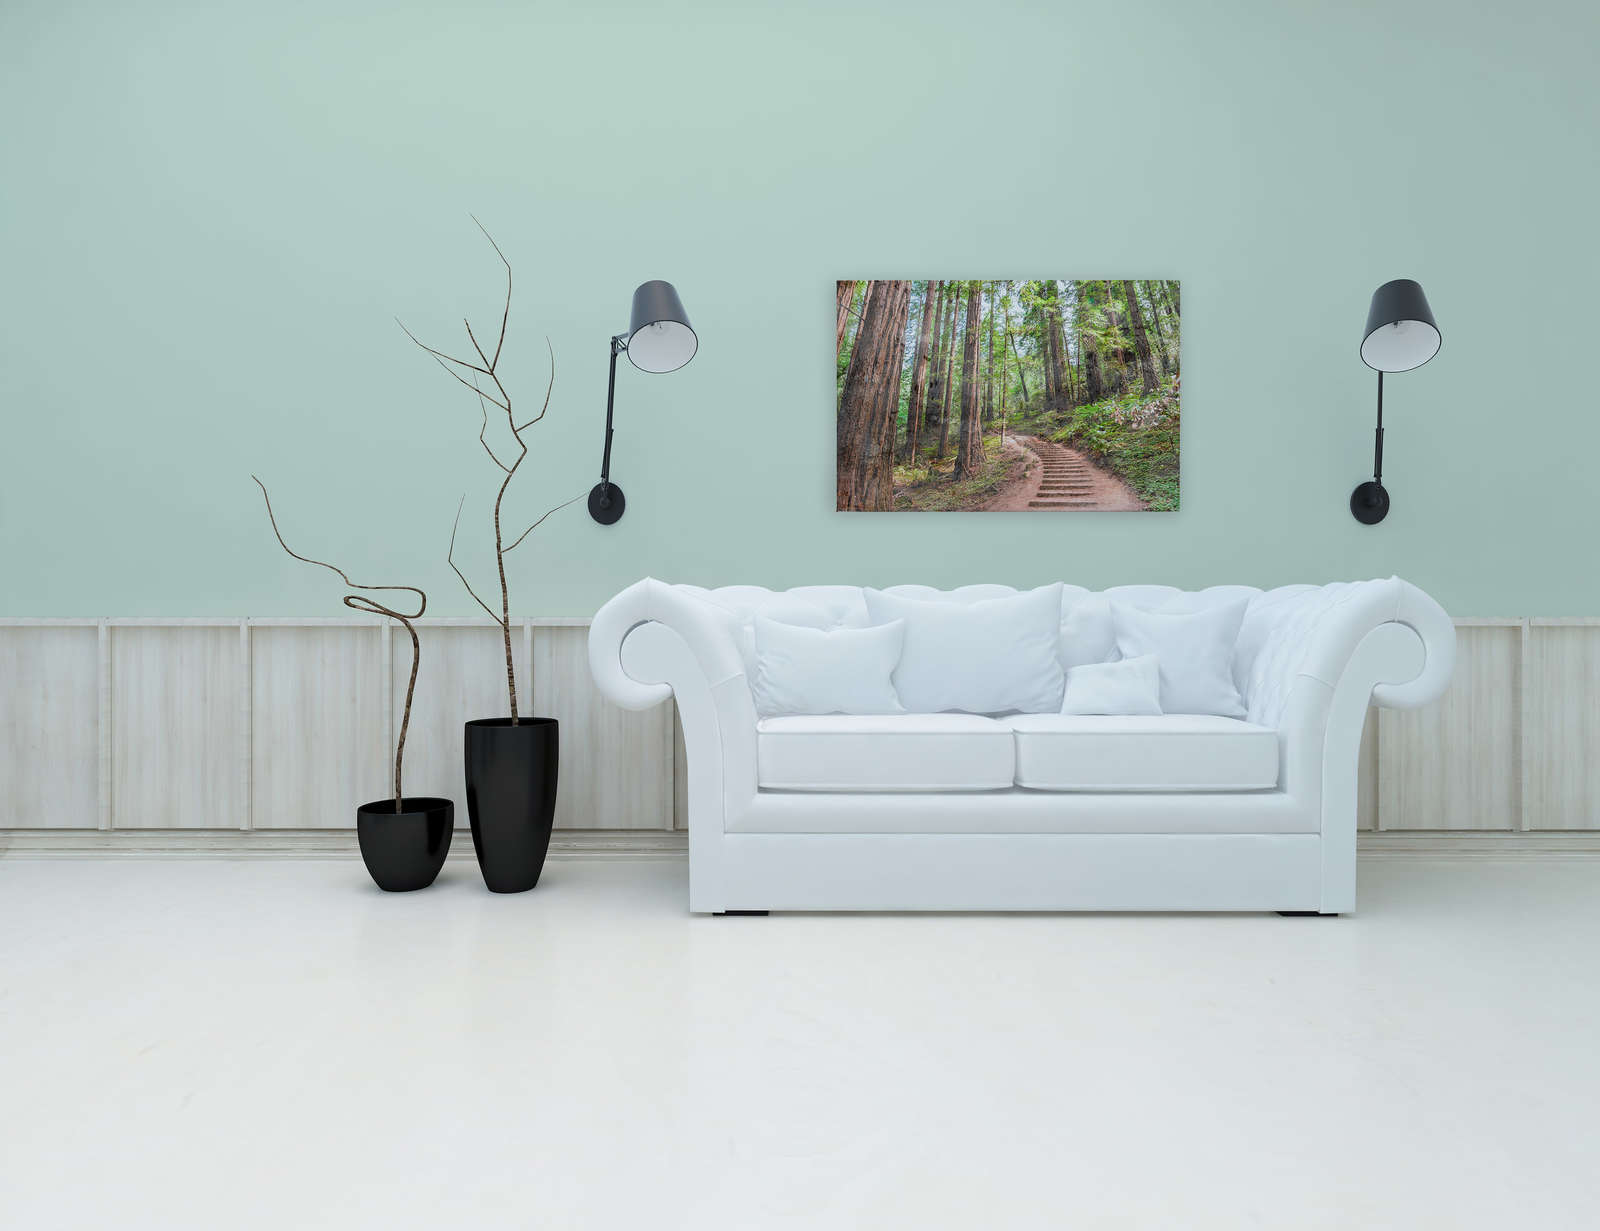             Canvas met houten trap door het bos | bruin, groen, blauw - 0.90 m x 0.60 m
        